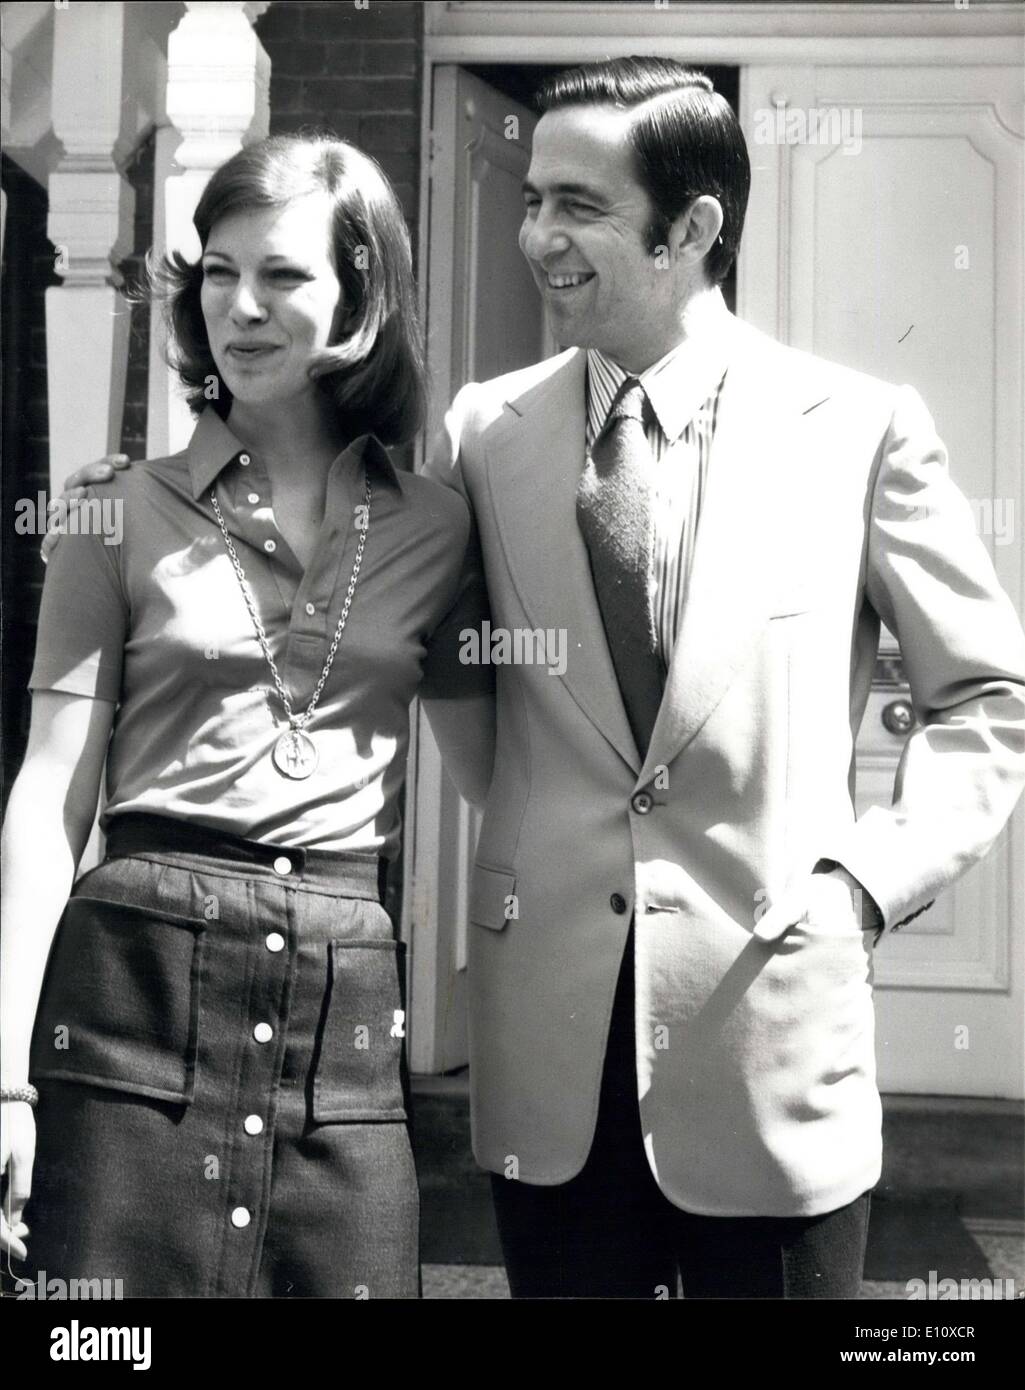 Lug. 25, 1974 - Ex-King Costantino e la moglie a Chobham: Ex - Re Costantino di Grecia chi è in esilio con la sua famiglia in Foto Stock